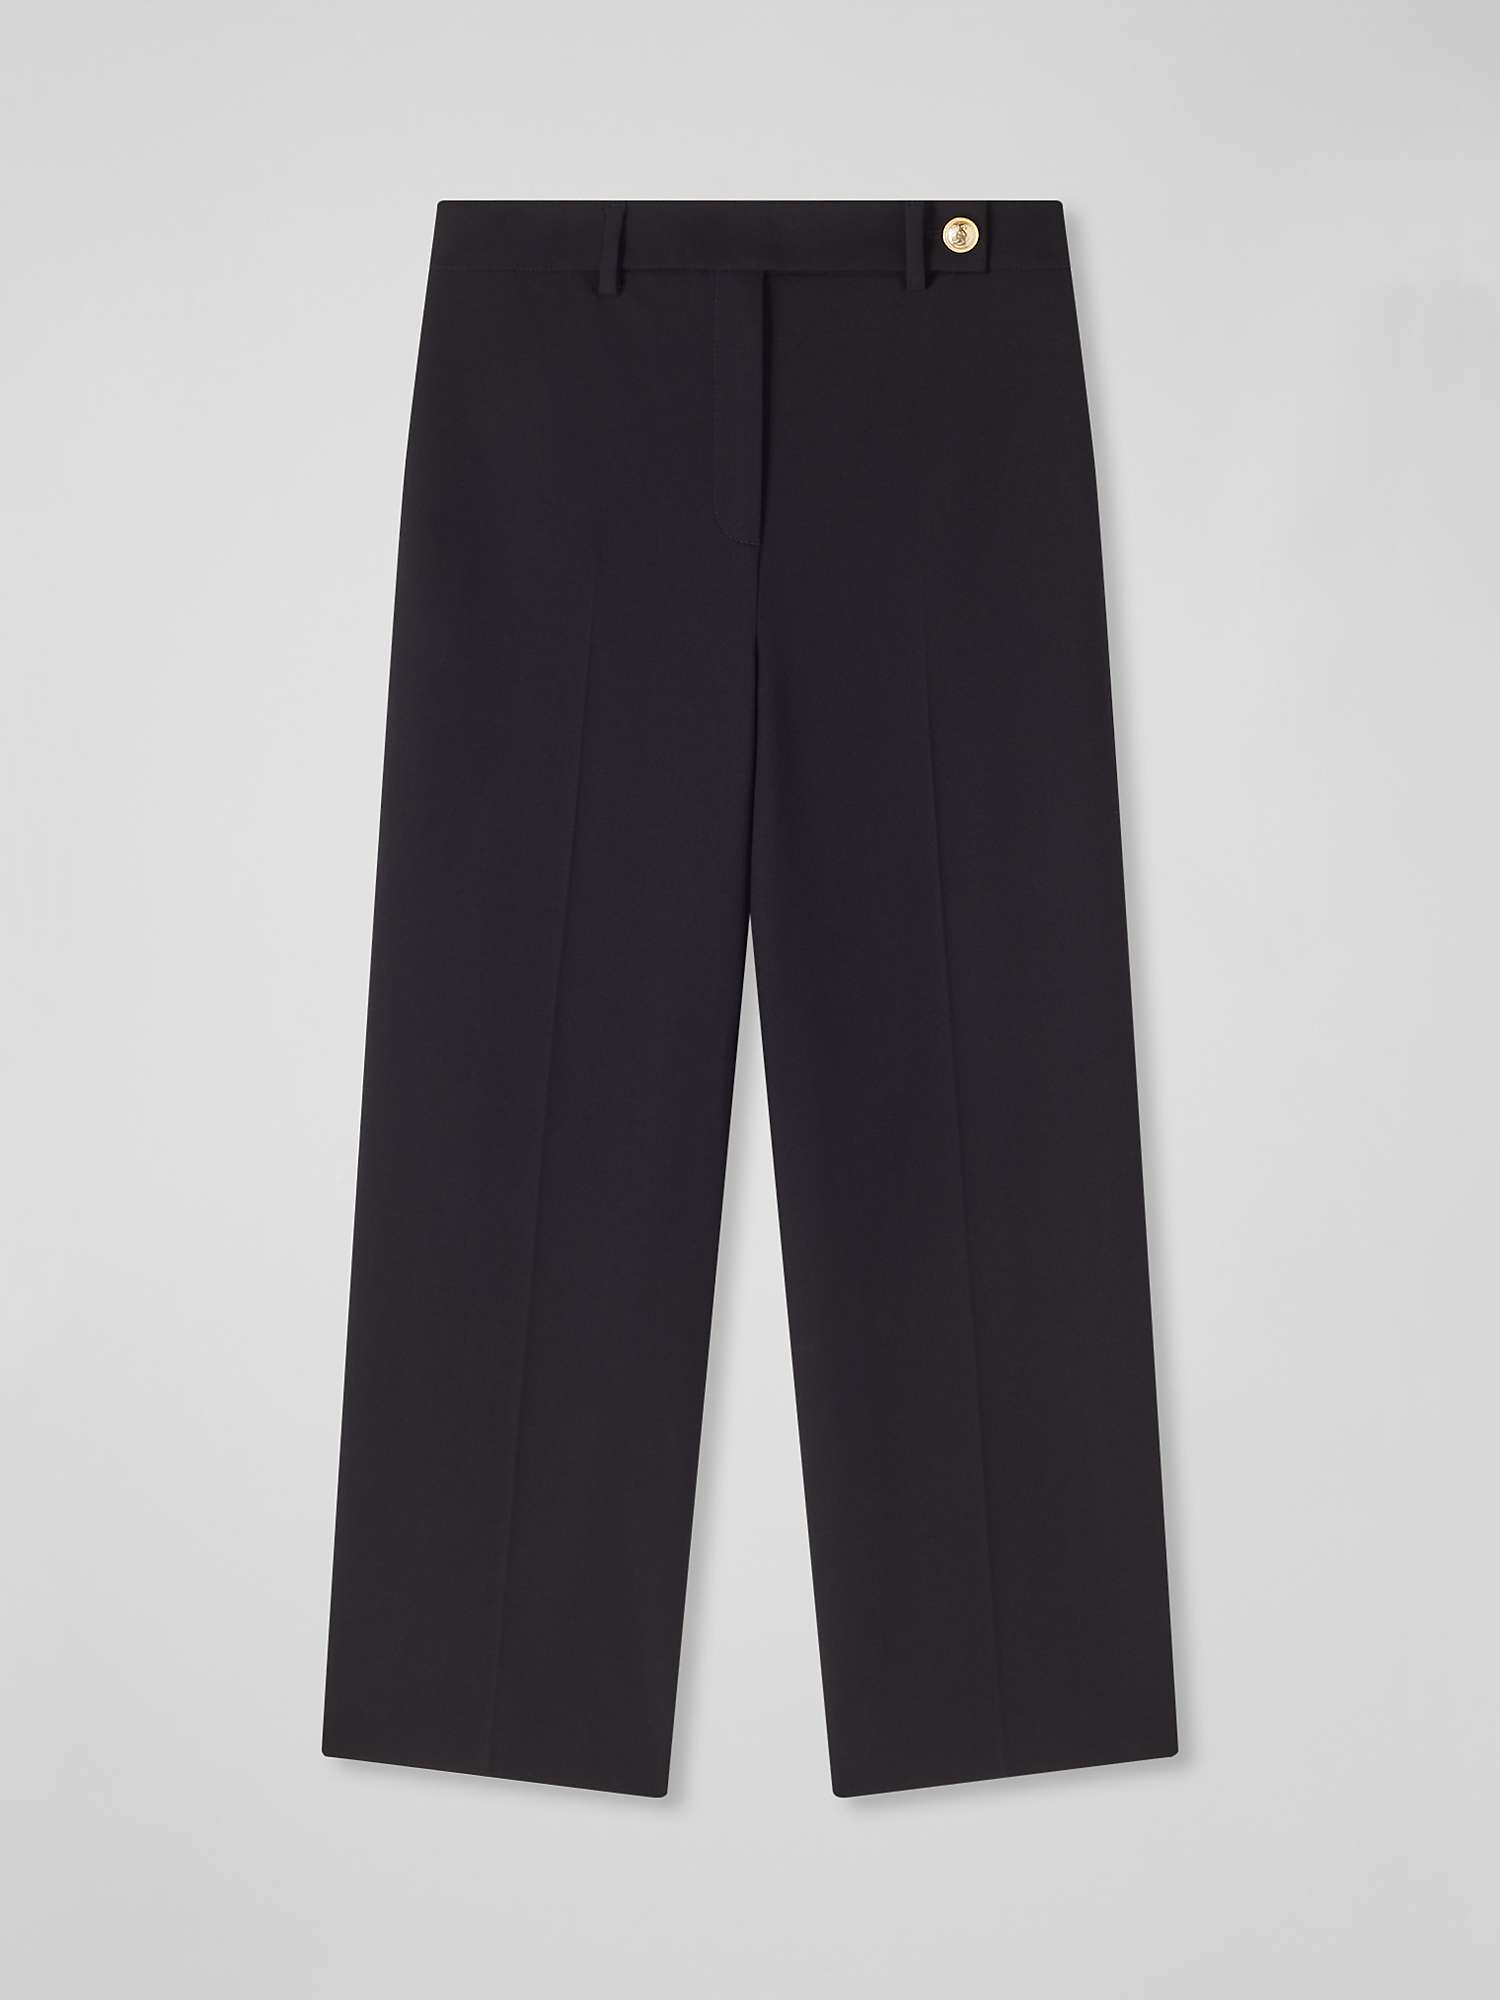 Buy L.K.Bennett Bibi Tailored Trousers, Black Online at johnlewis.com